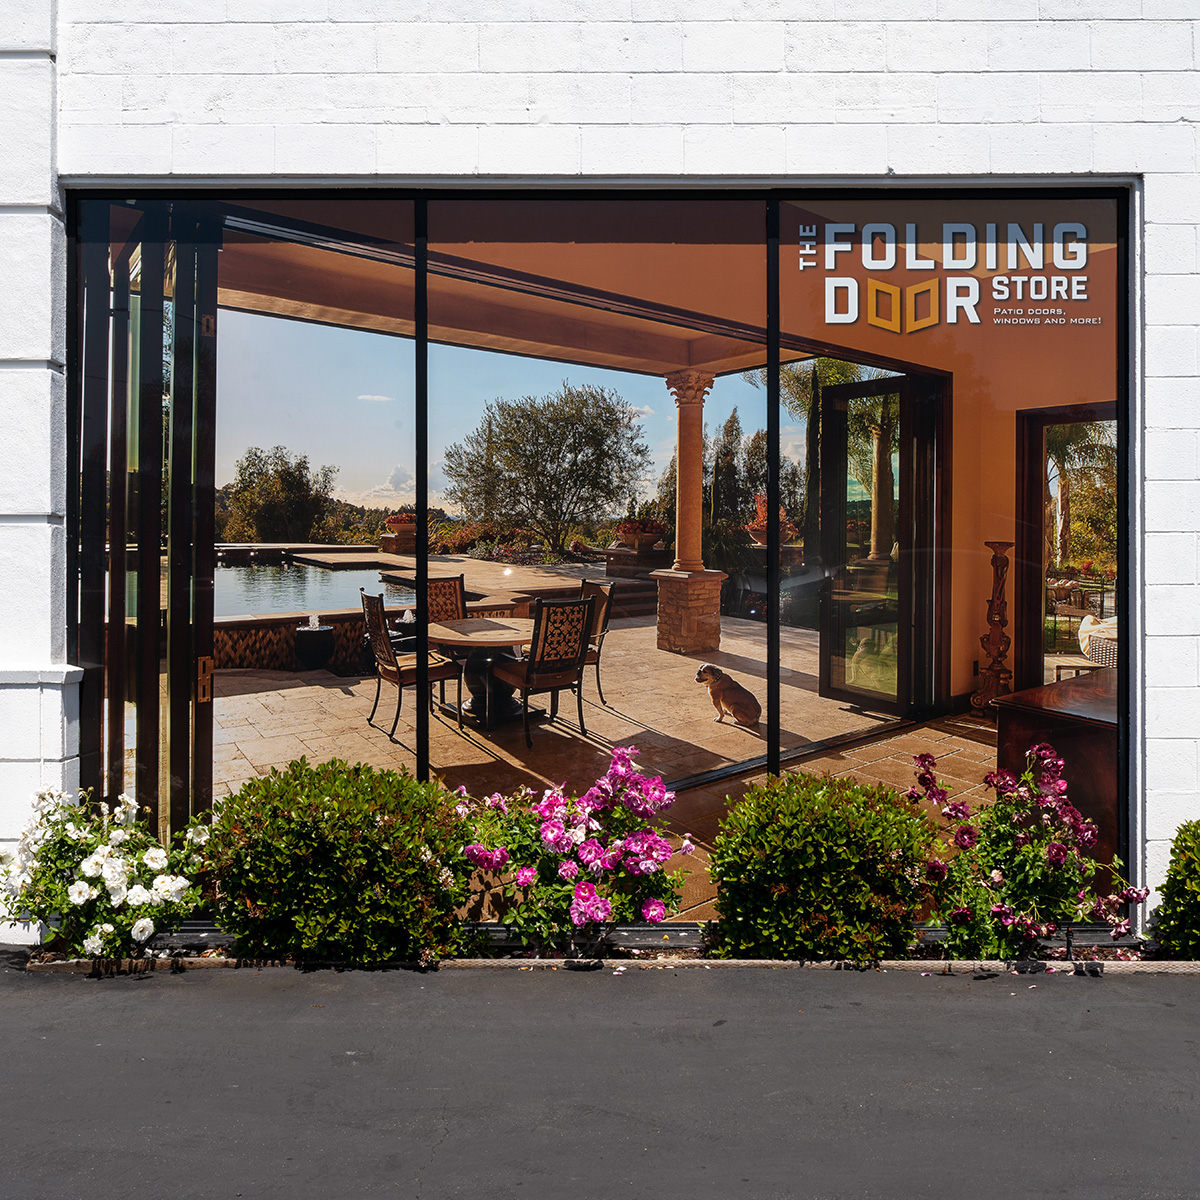 Window Graphics: The Folding Door Store